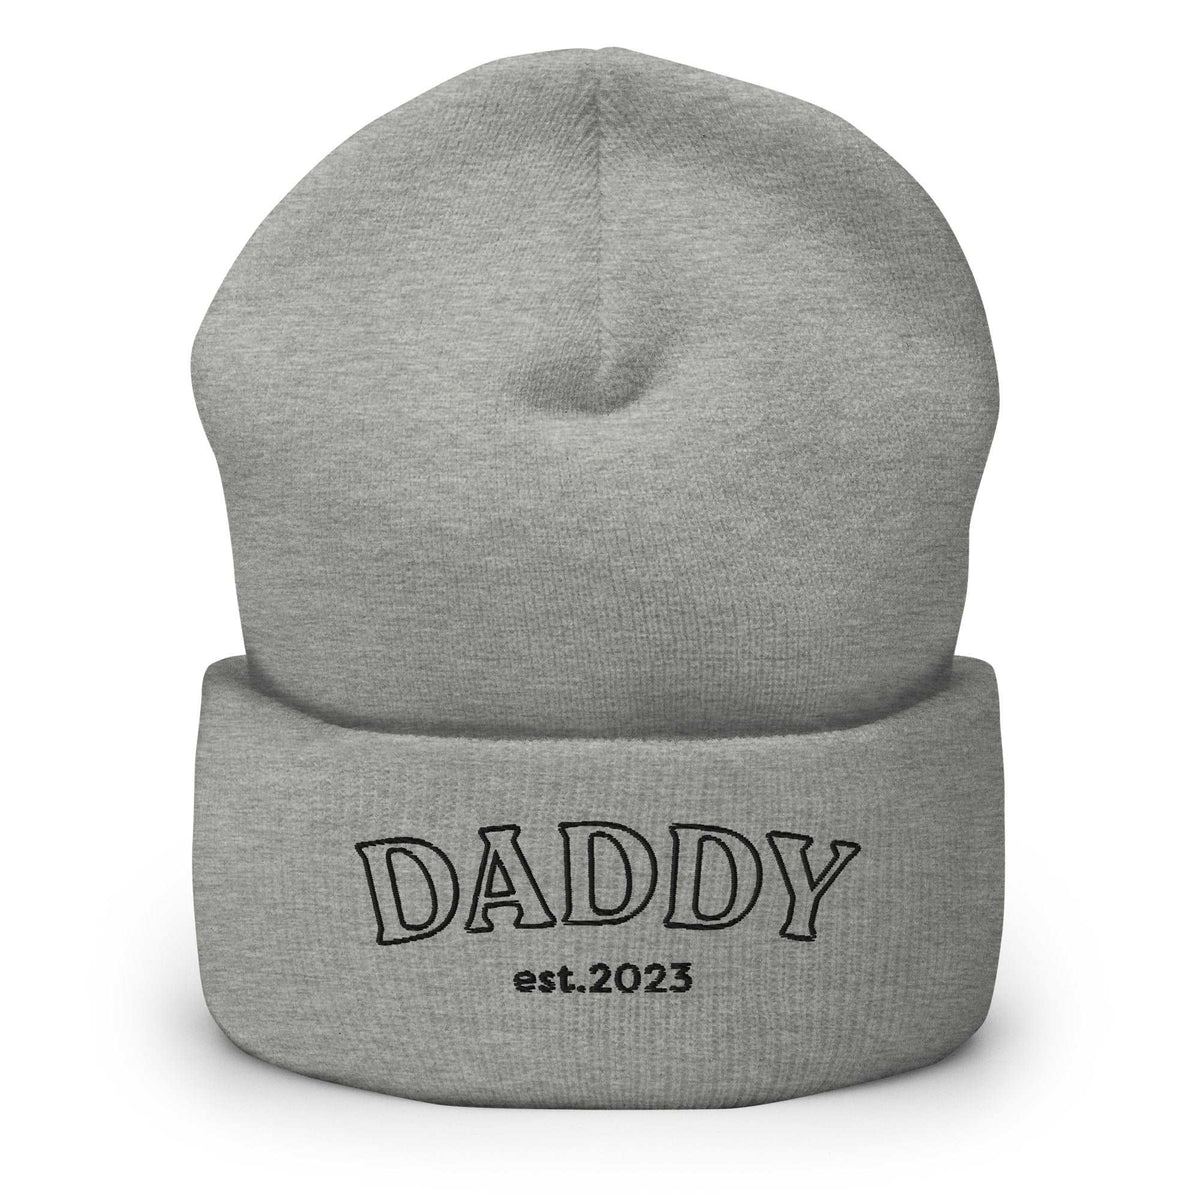 Bonnet | Daddy established + date